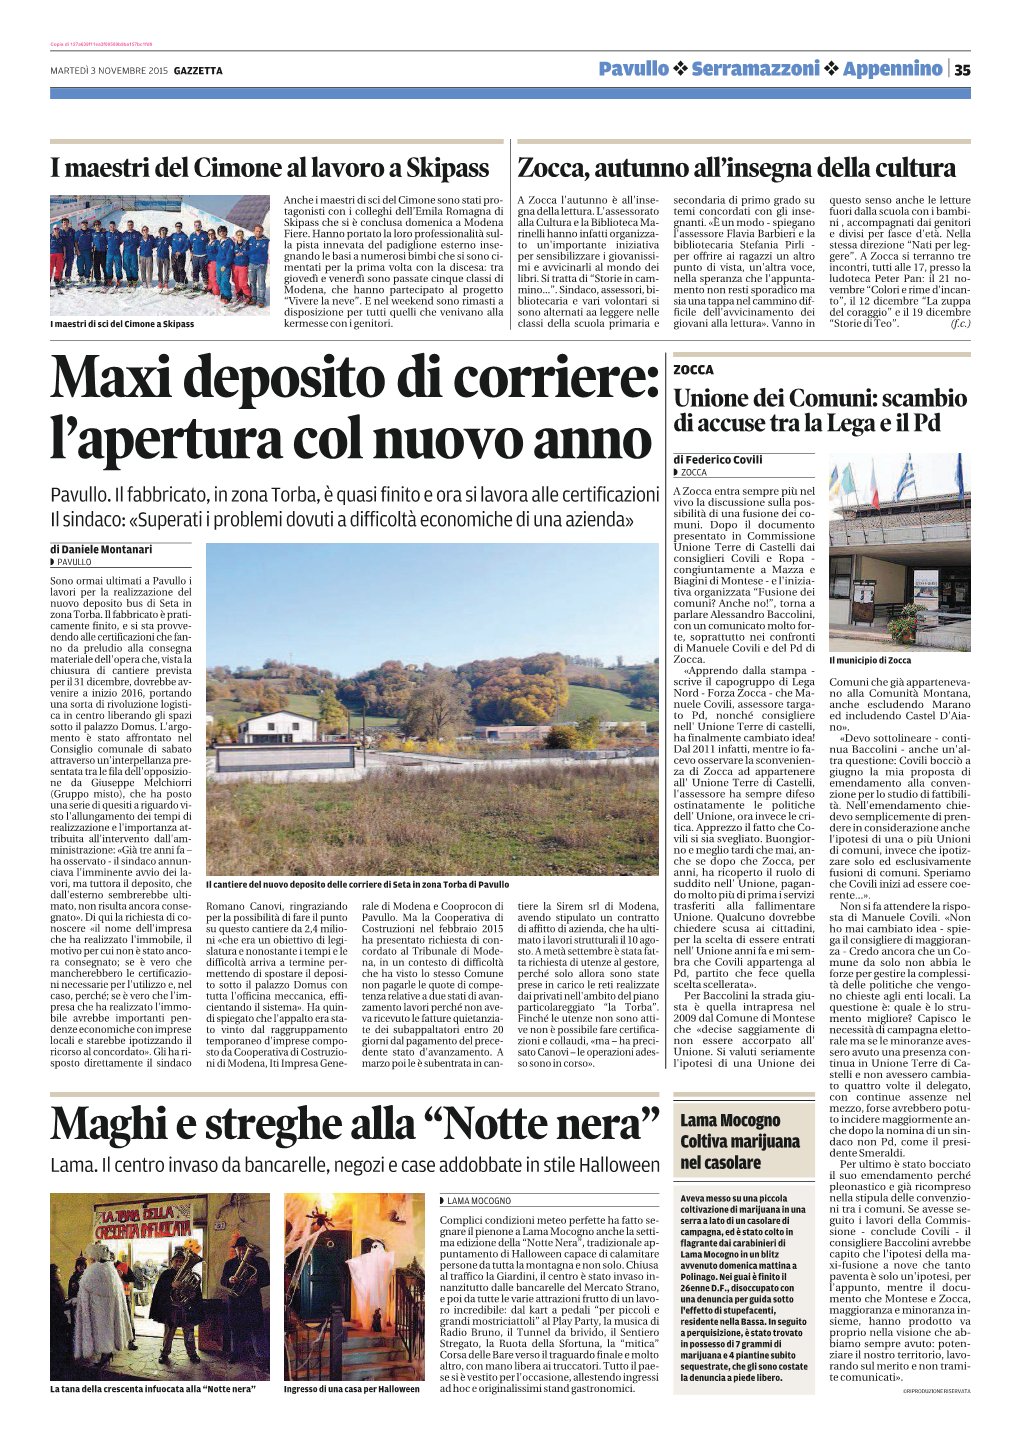 Maxi Deposito Di Corriere: L'apertura